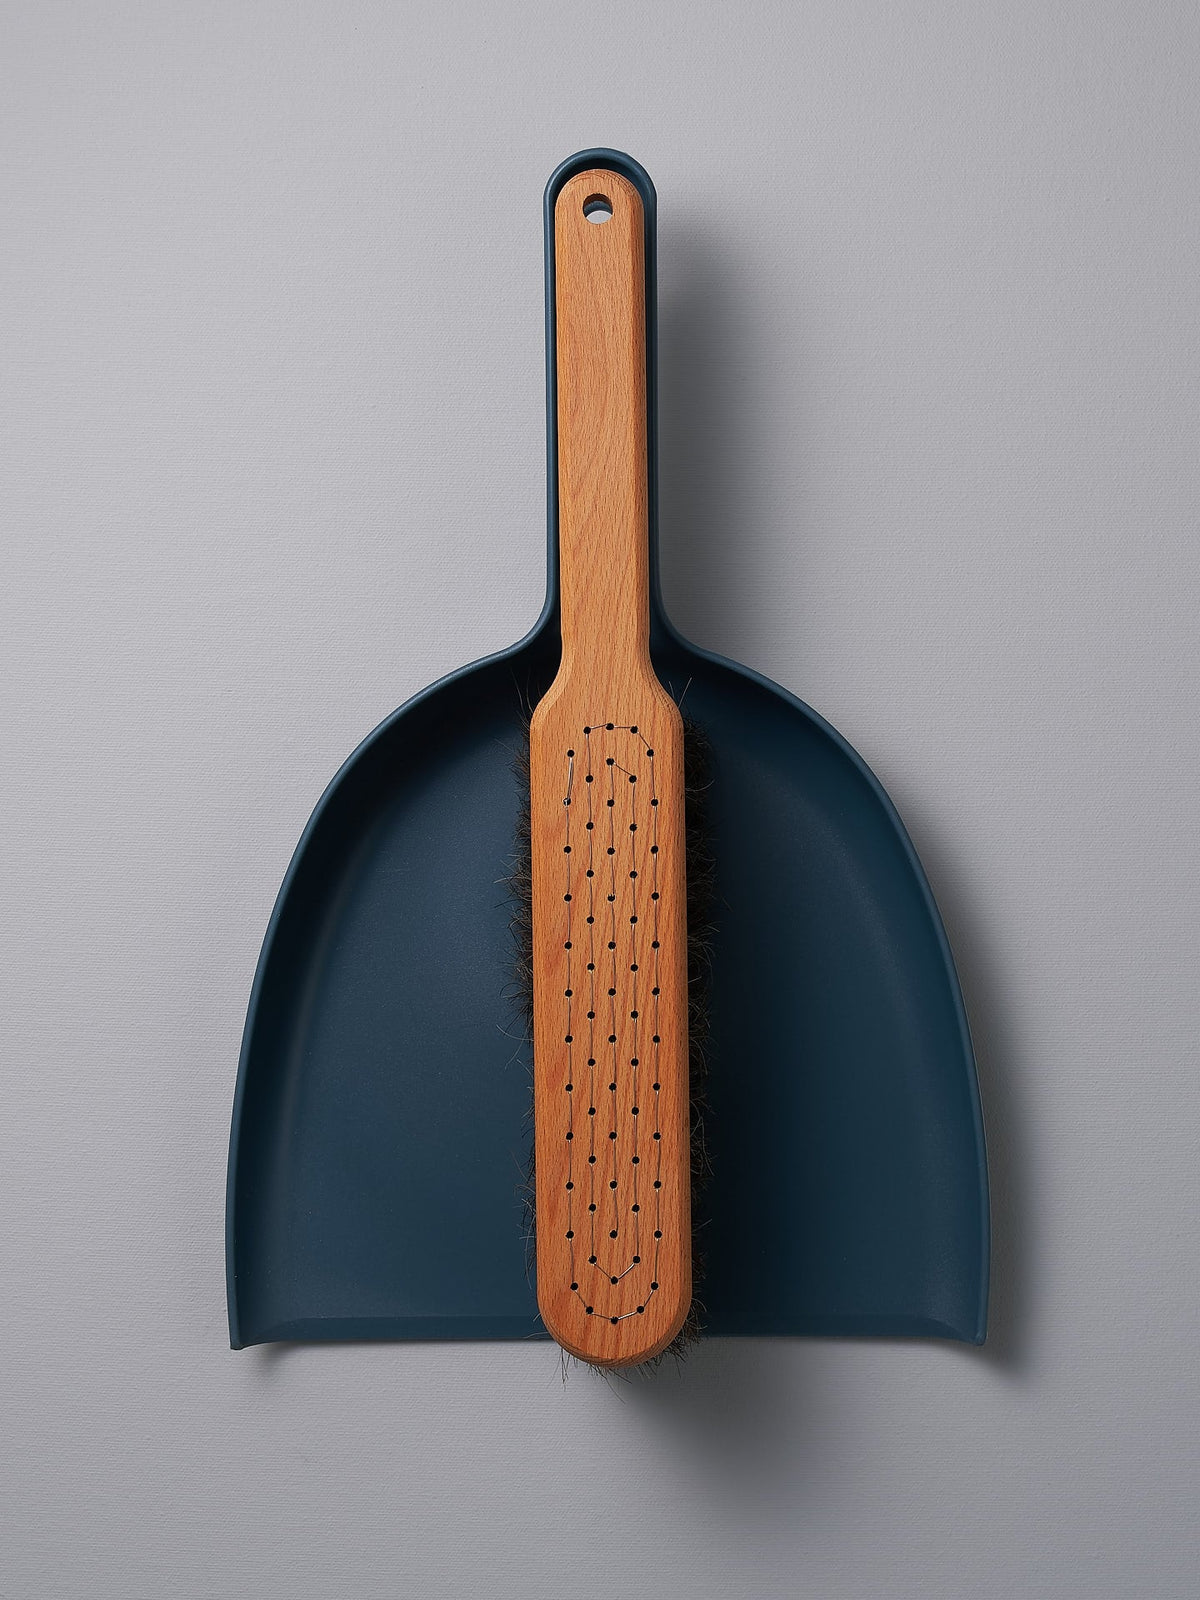 An Iris Hantverk Petrol Blue Dustpan &amp; Brush Set with a wooden handle.